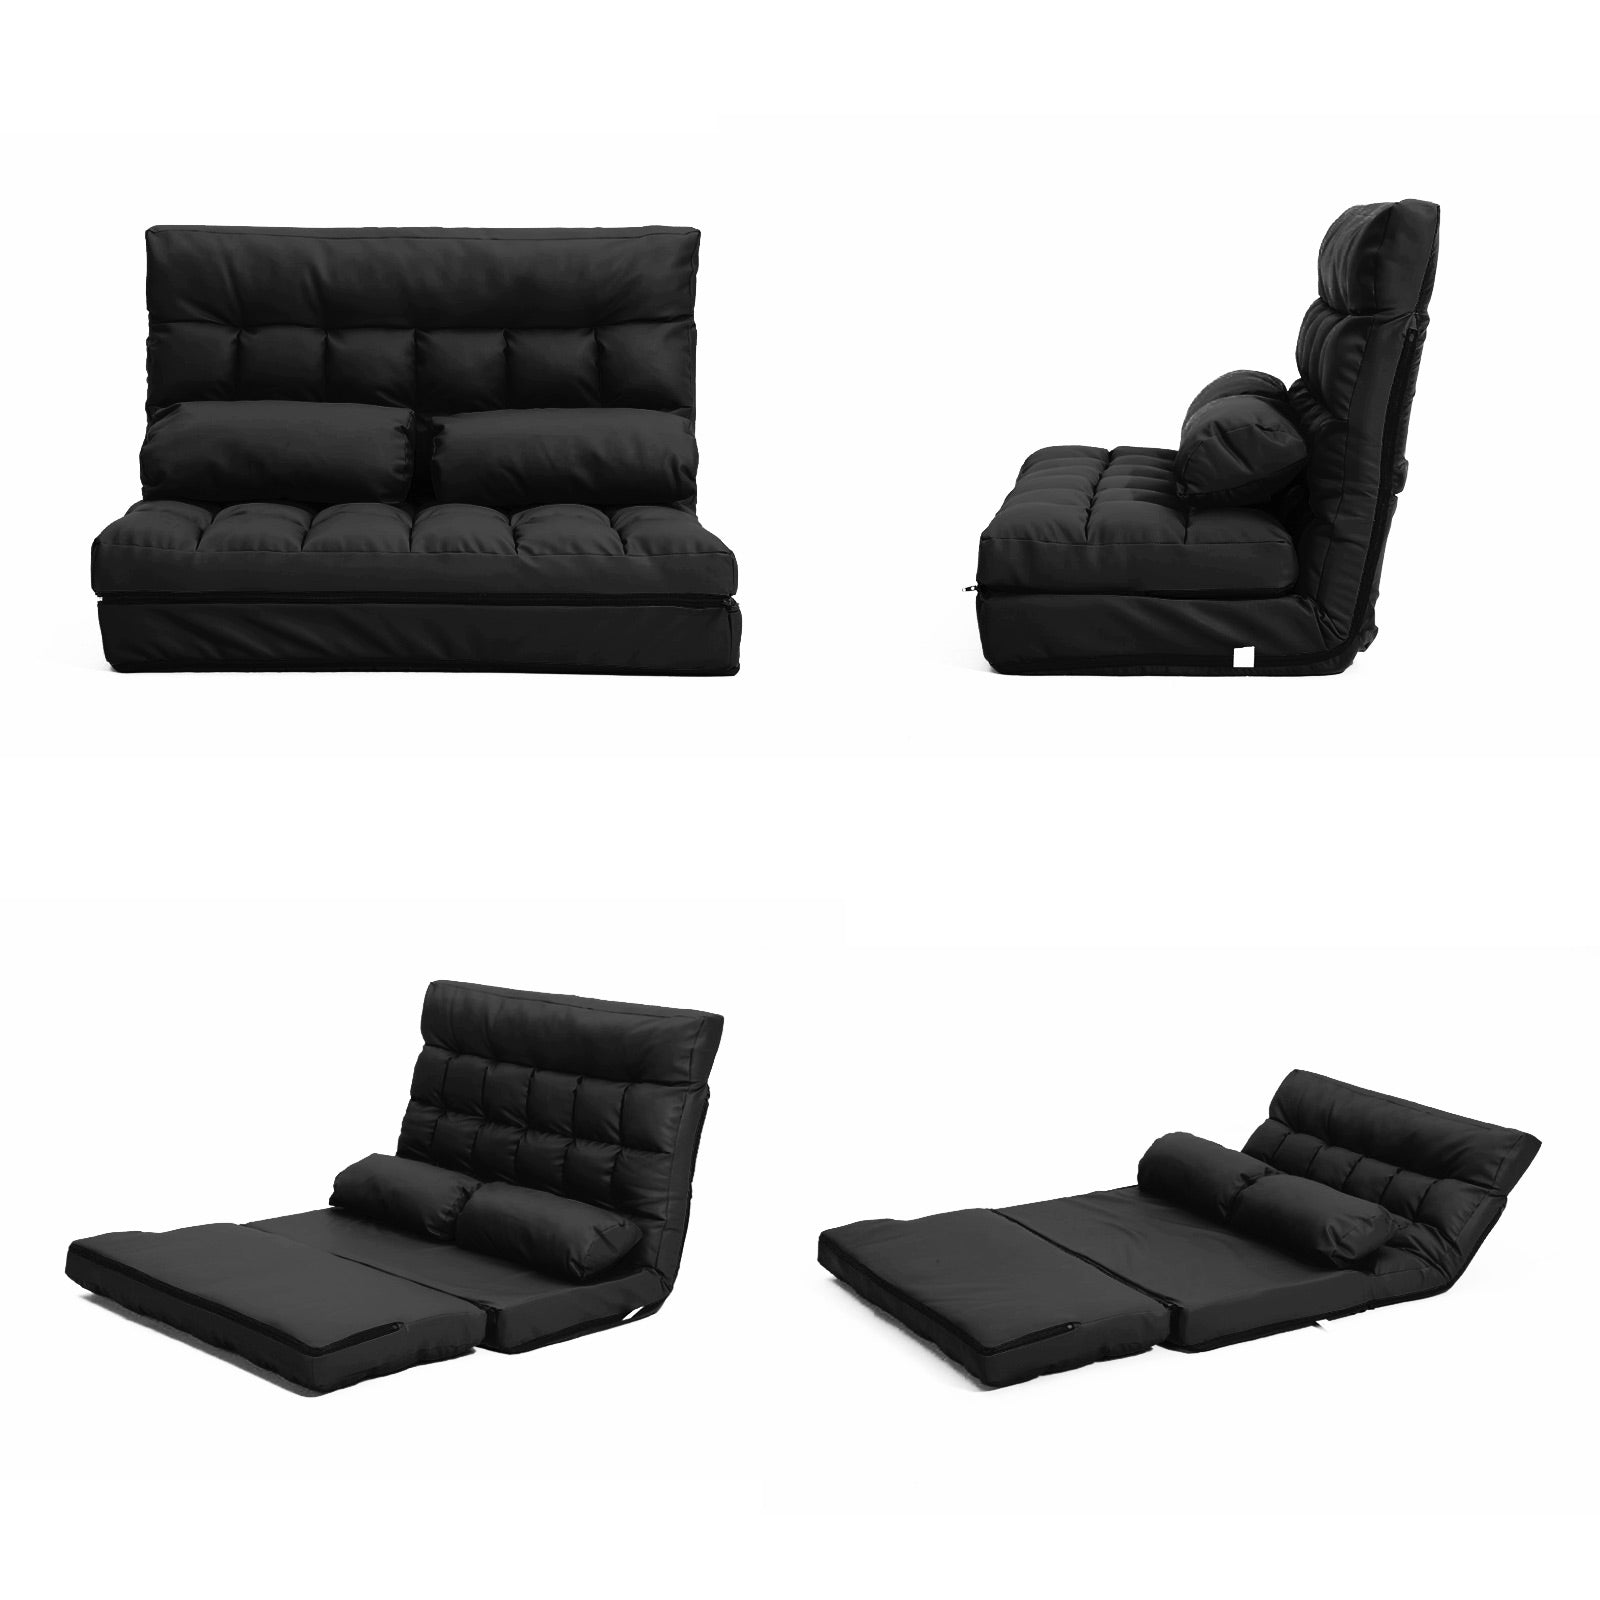 La Bella Double Seat Couch Bed Black Sofa Gemini Leather.